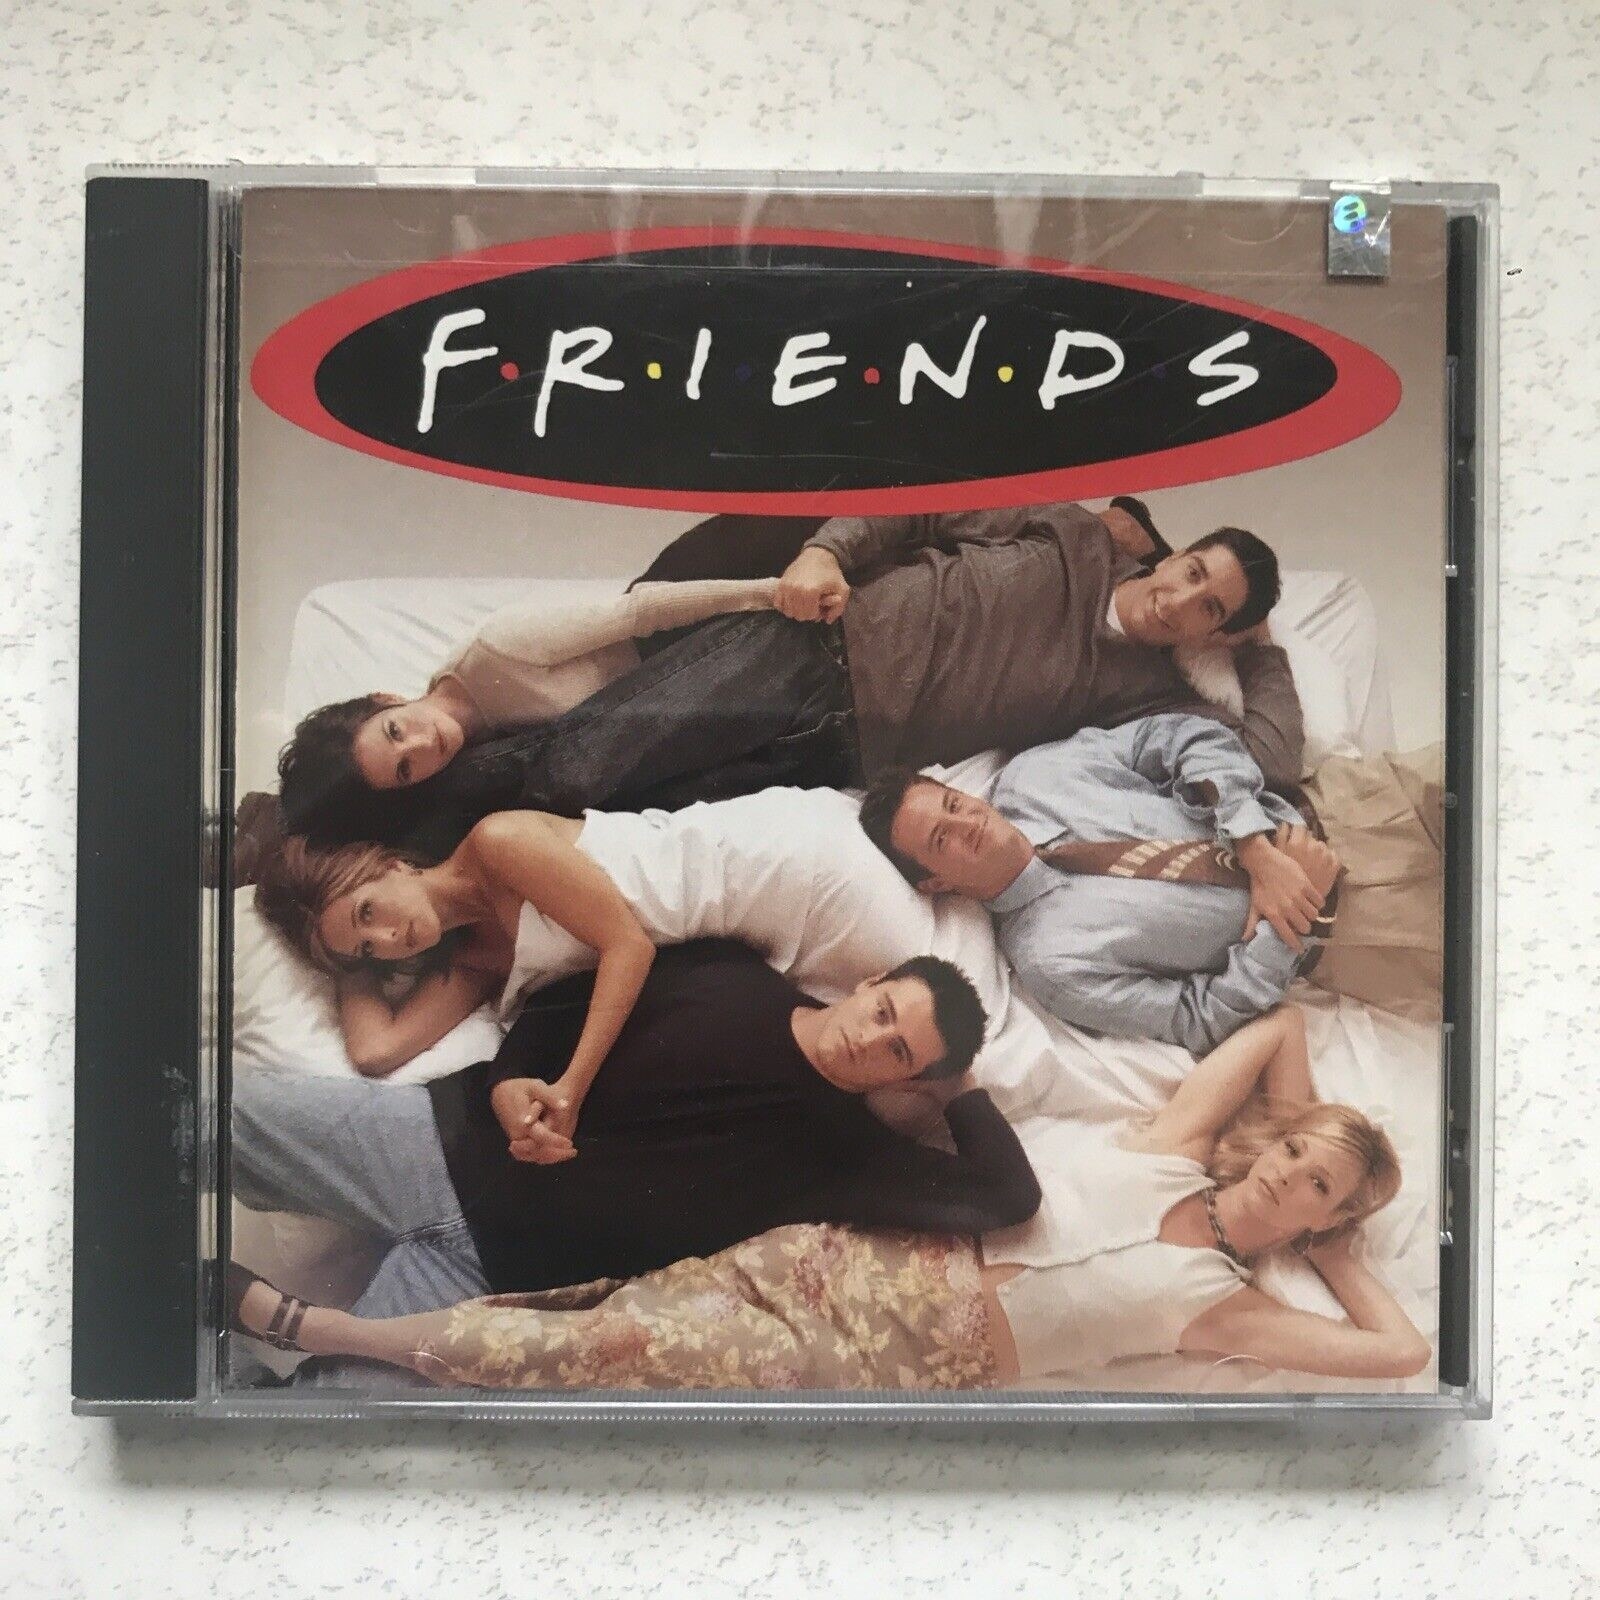 The &quot;Friends&quot; soundtrack